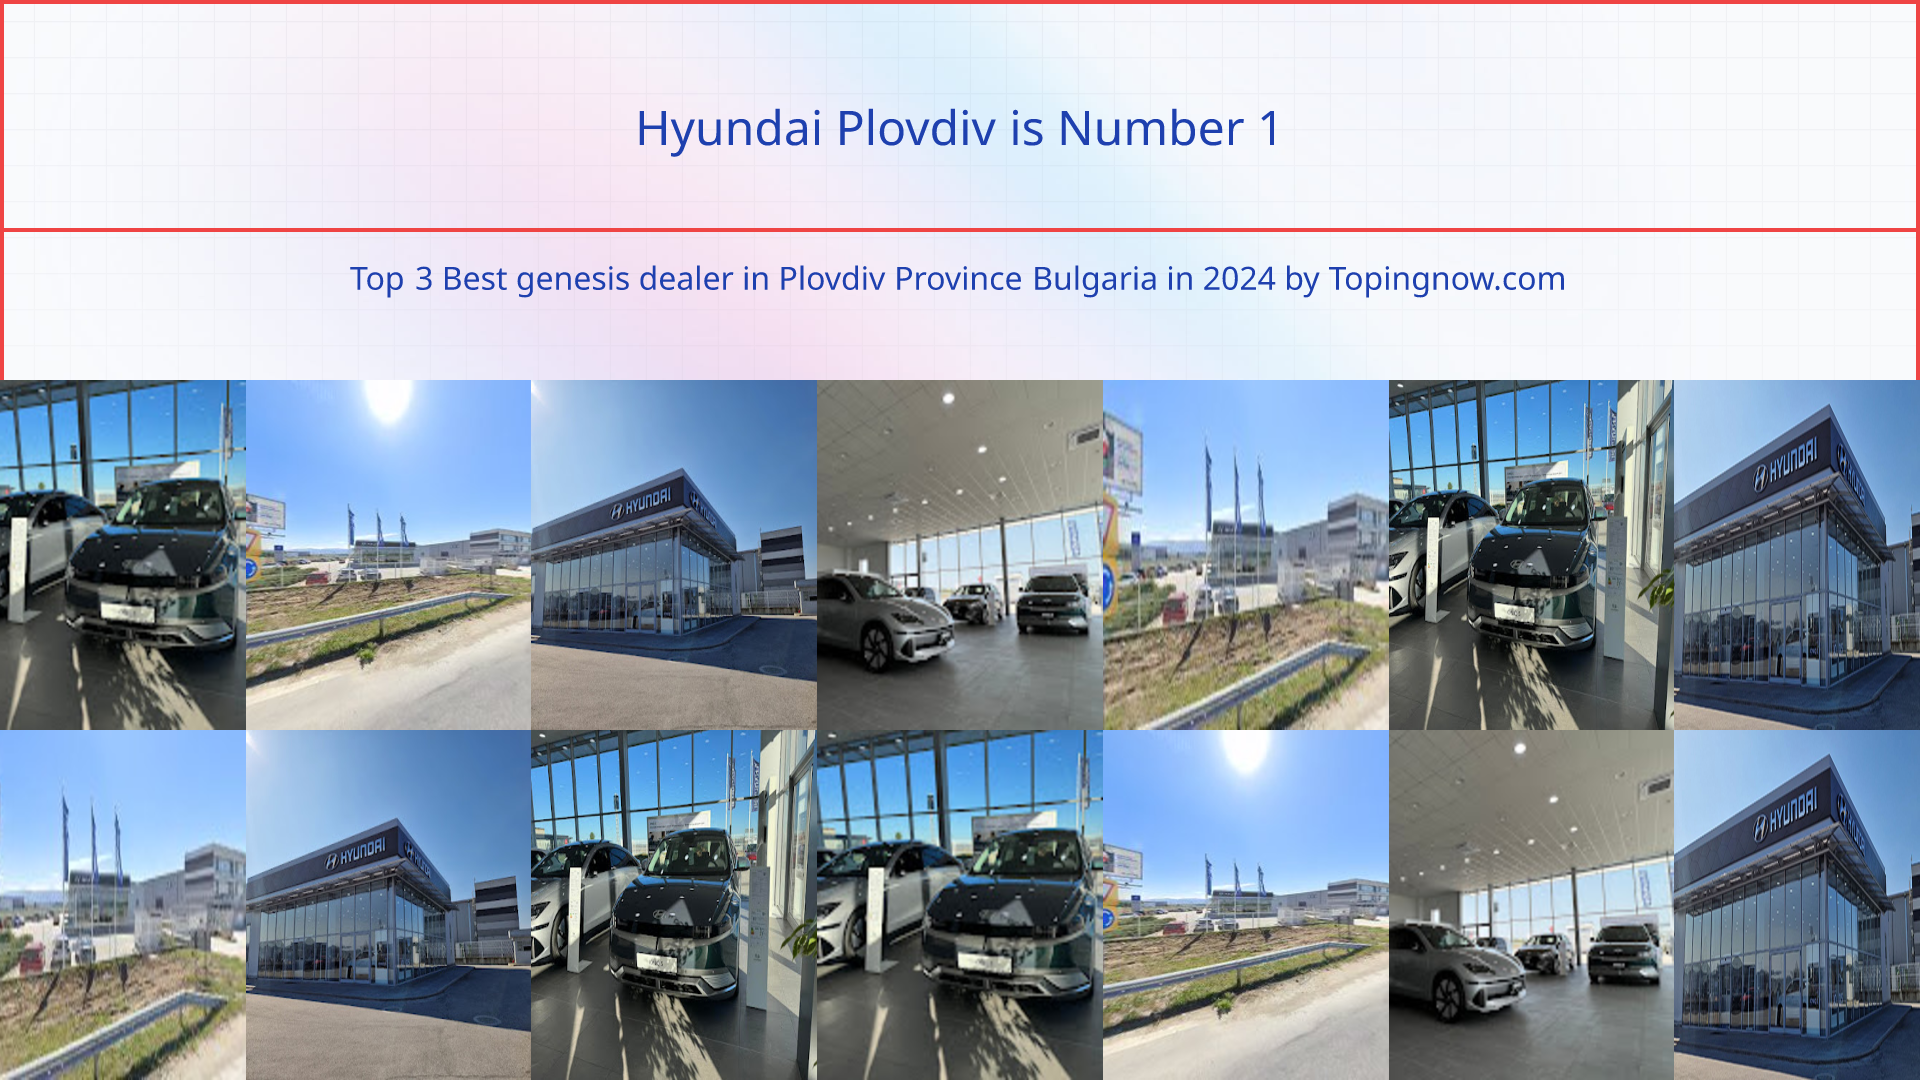 Hyundai Plovdiv: Top 3 Best genesis dealer in Plovdiv Province Bulgaria in 2024